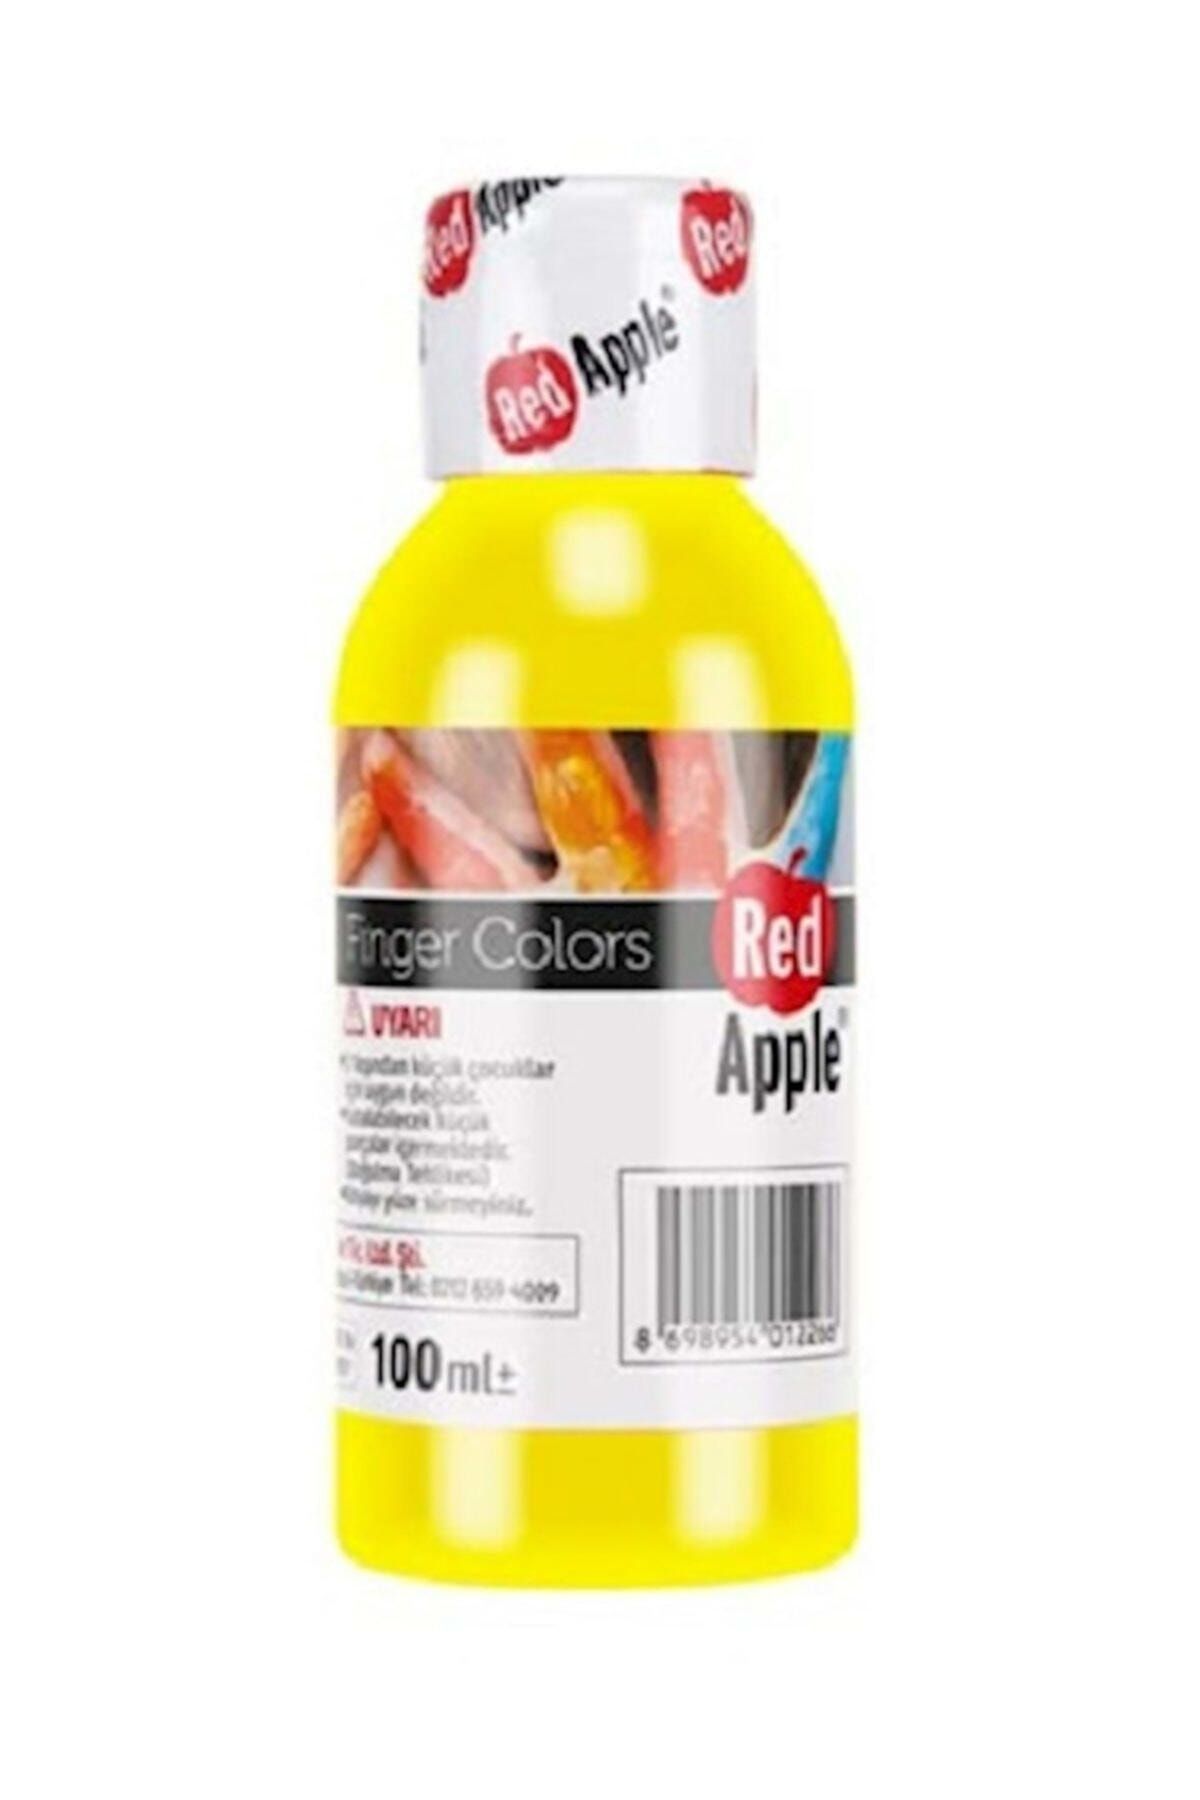 Red Apple Parmak Boyası Sarı 100 gr. Rp110-11